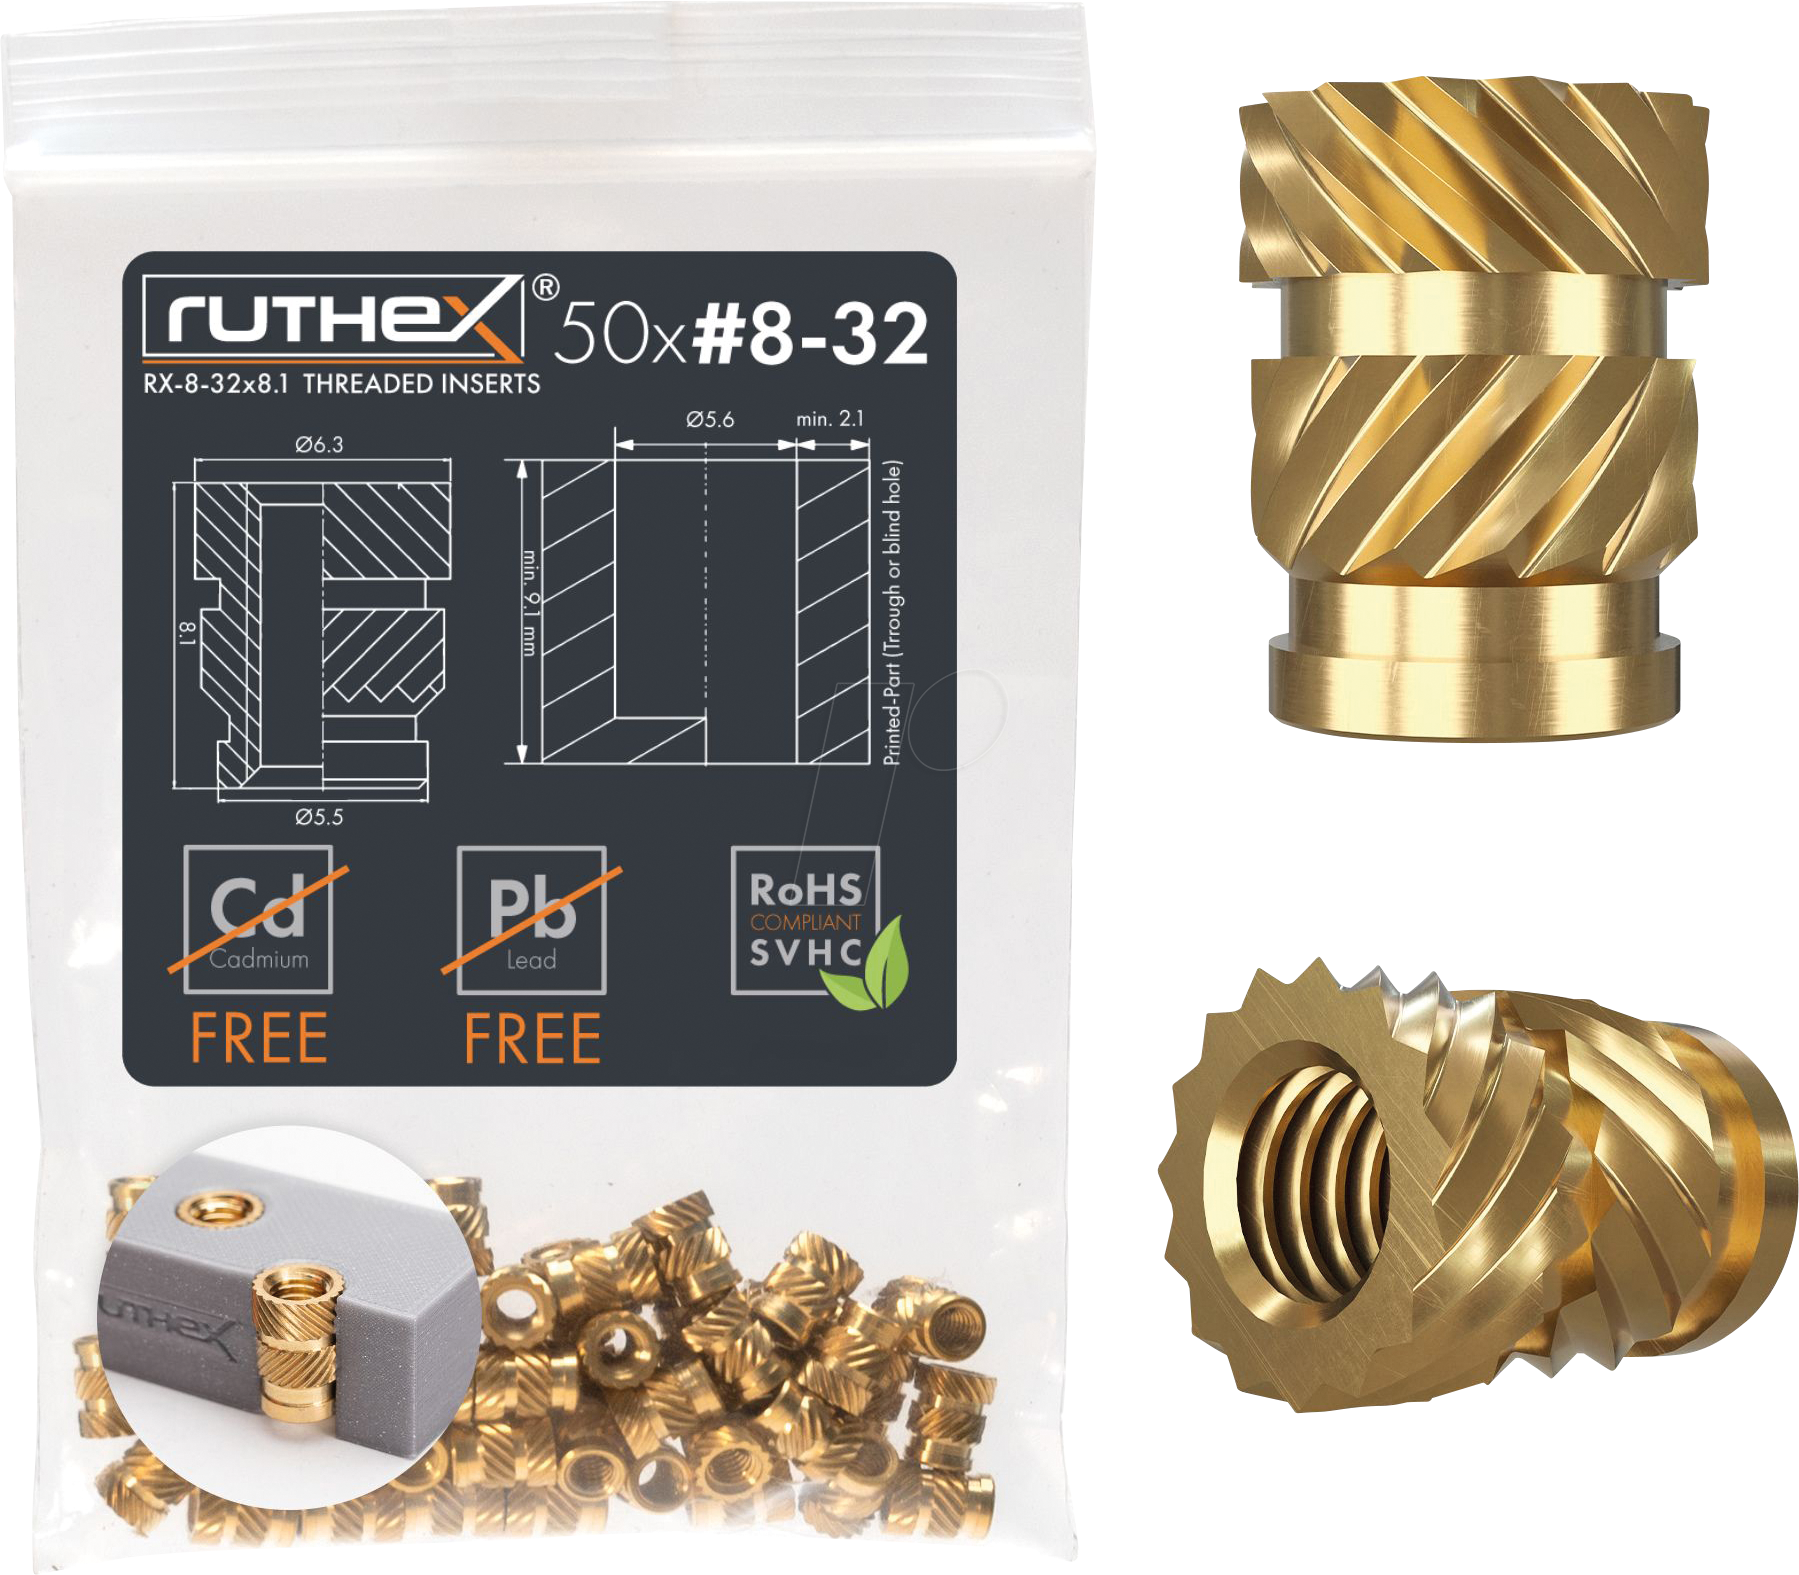 RX-8-32X8.1 - 3D Druck, Gewindeeinsätze, #8-32x8,1, 50 Stück von RUTHEX